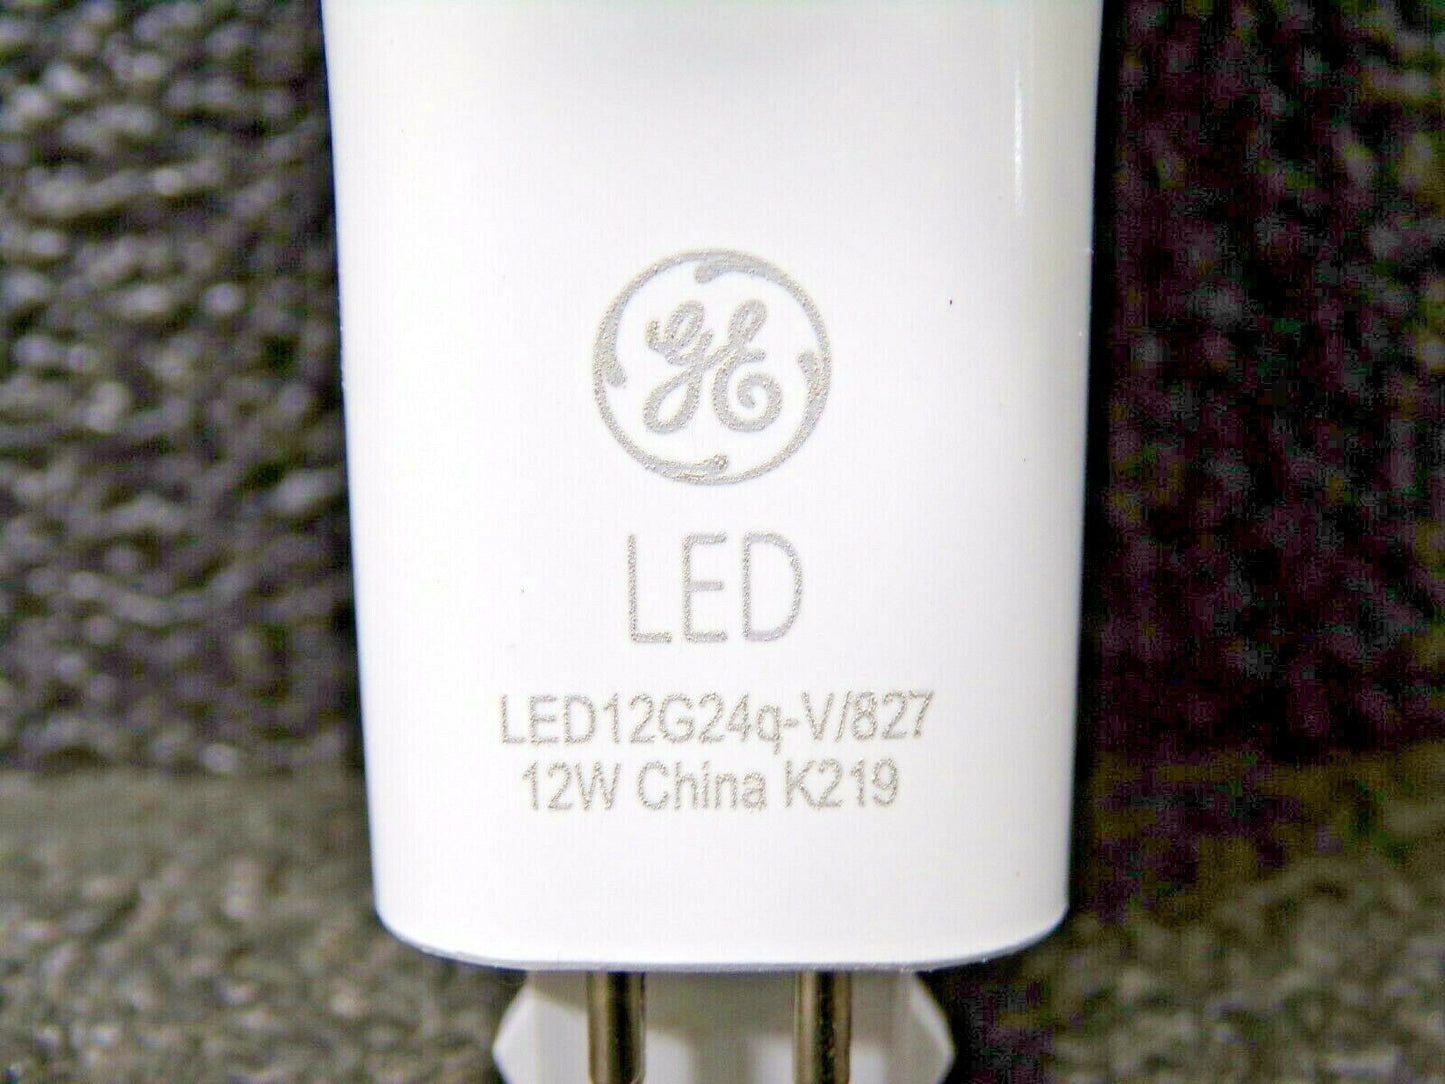 (1) GE Lighting LED12G24q-V/827 PL Vert LED Lamp, 950 lm (183814789236-WTA01)